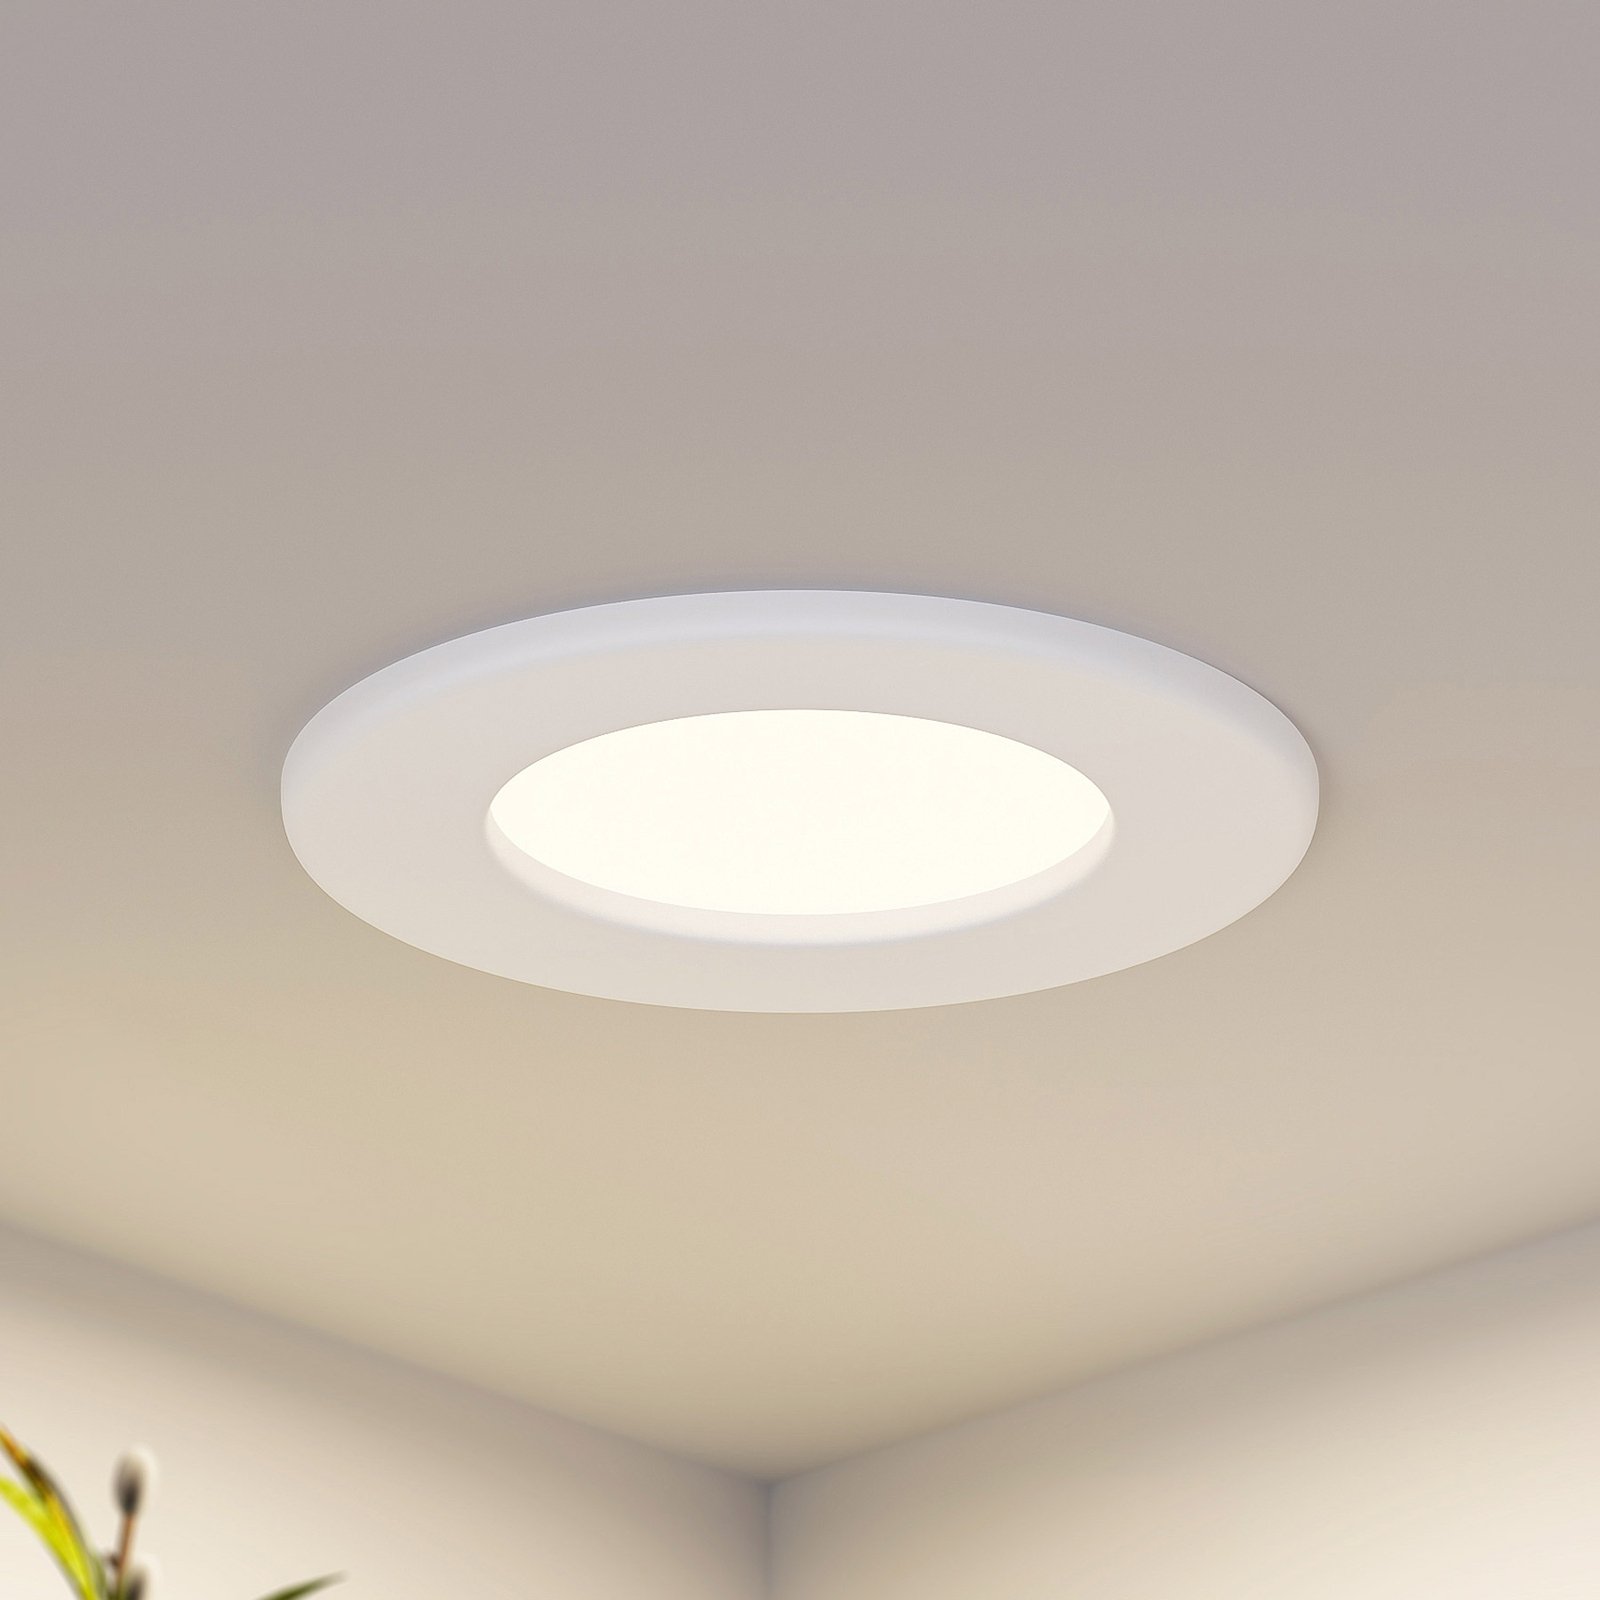 Prios Cadance lampe encastrée LED blanche, 11,5 cm